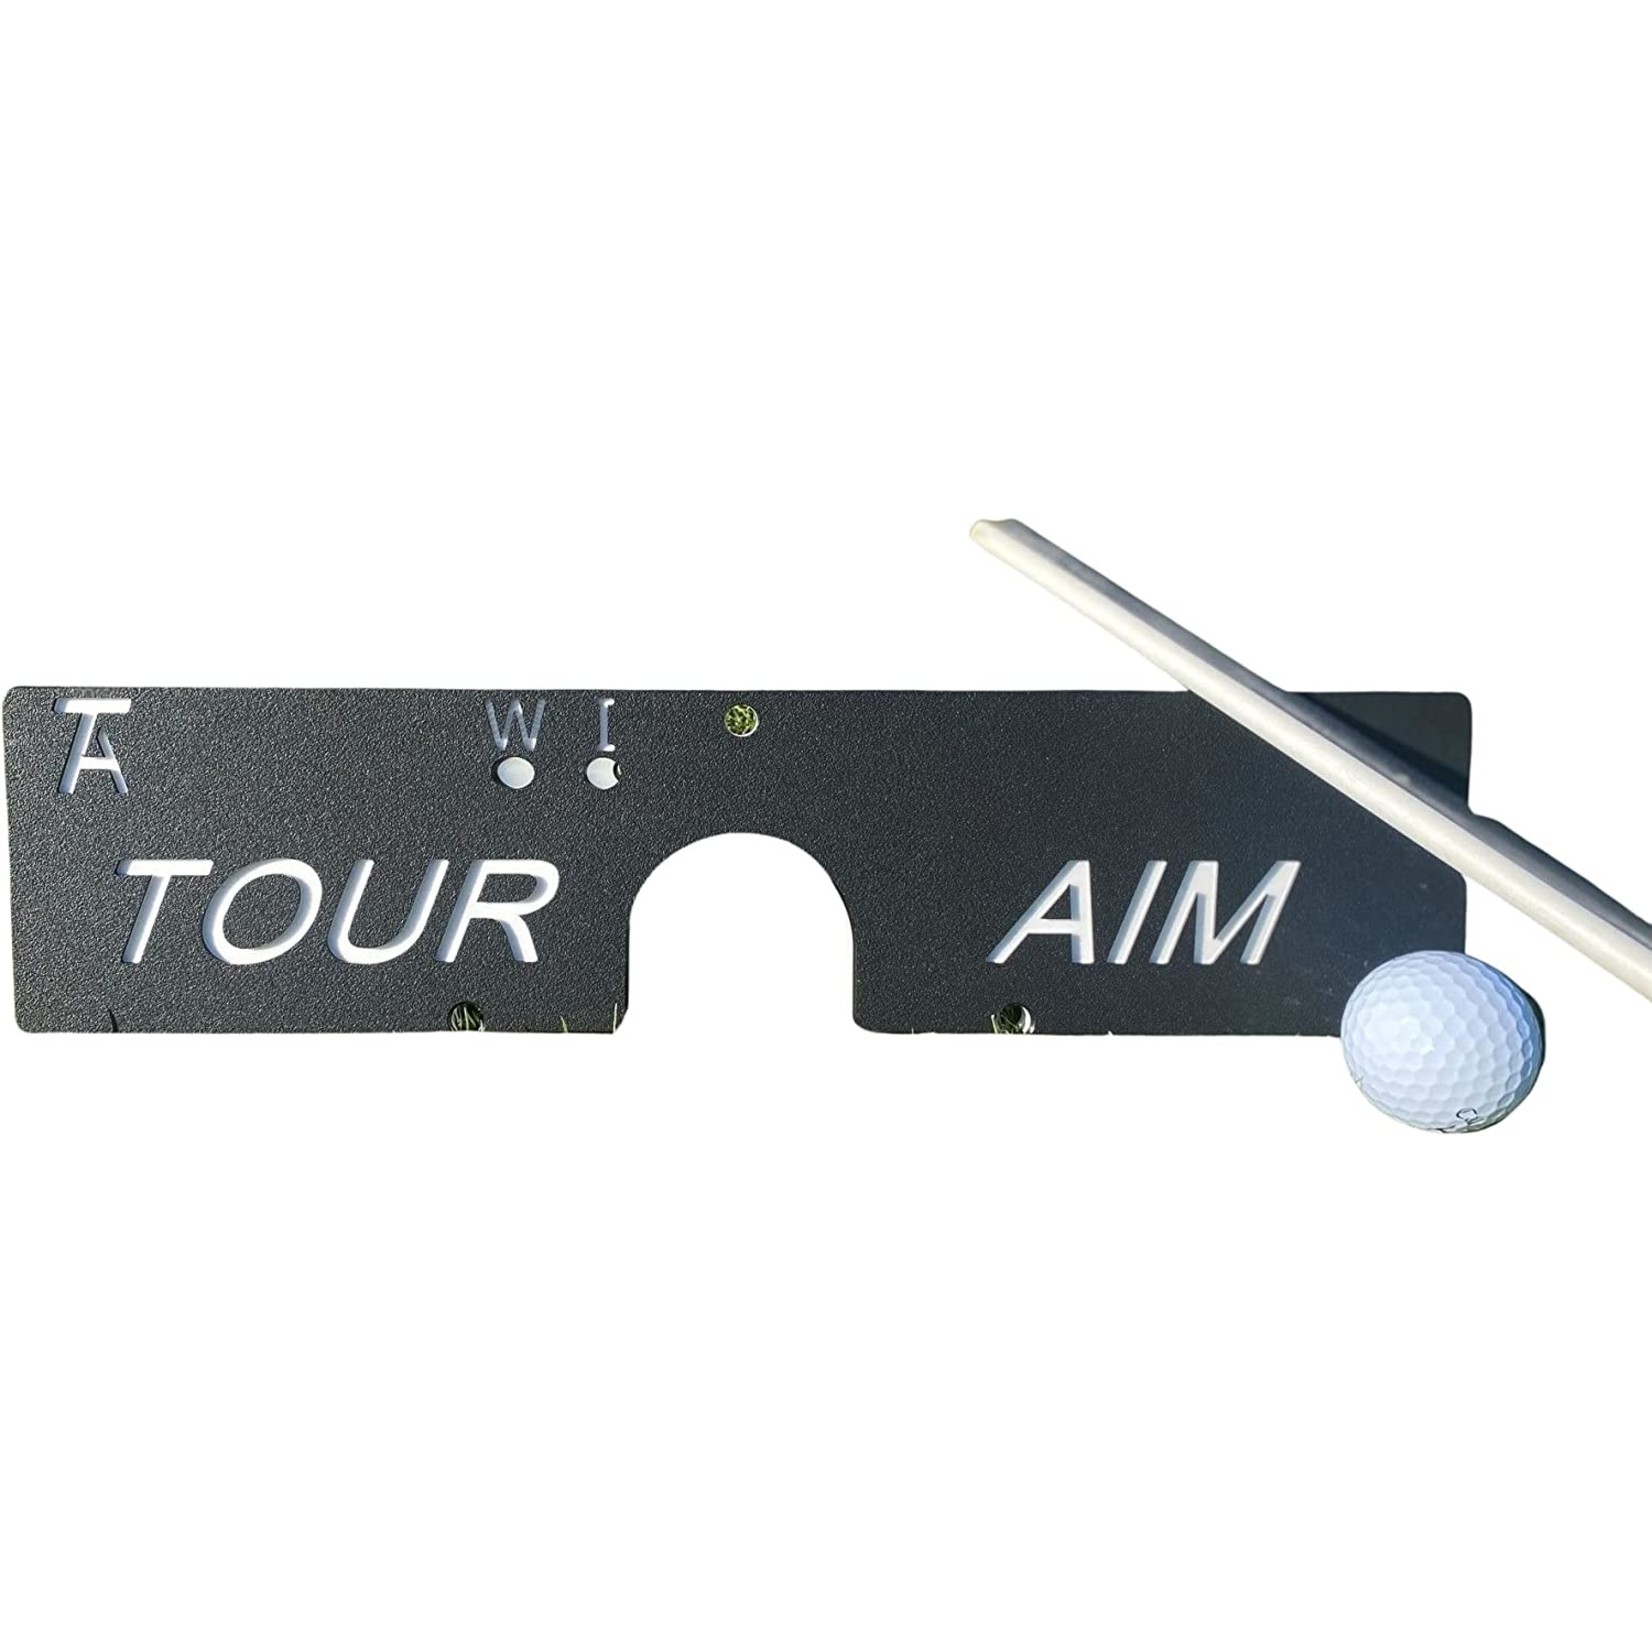 Tour Aim with 3 Alignment Sticks